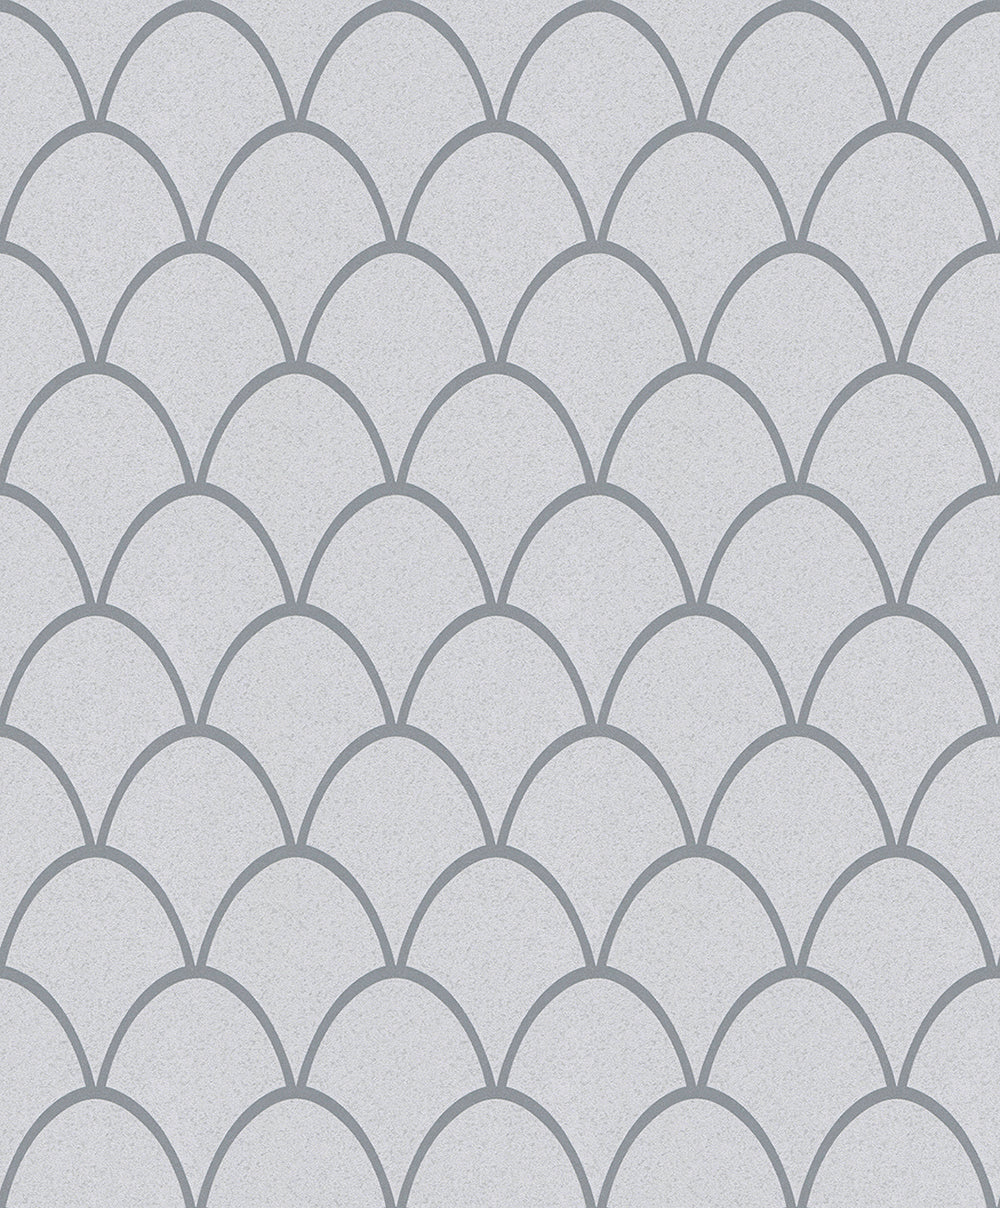 Schoner Wohnen New Spirit - Shimmery  Deco Arches art deco wallpaper Marburg Roll Grey  32722